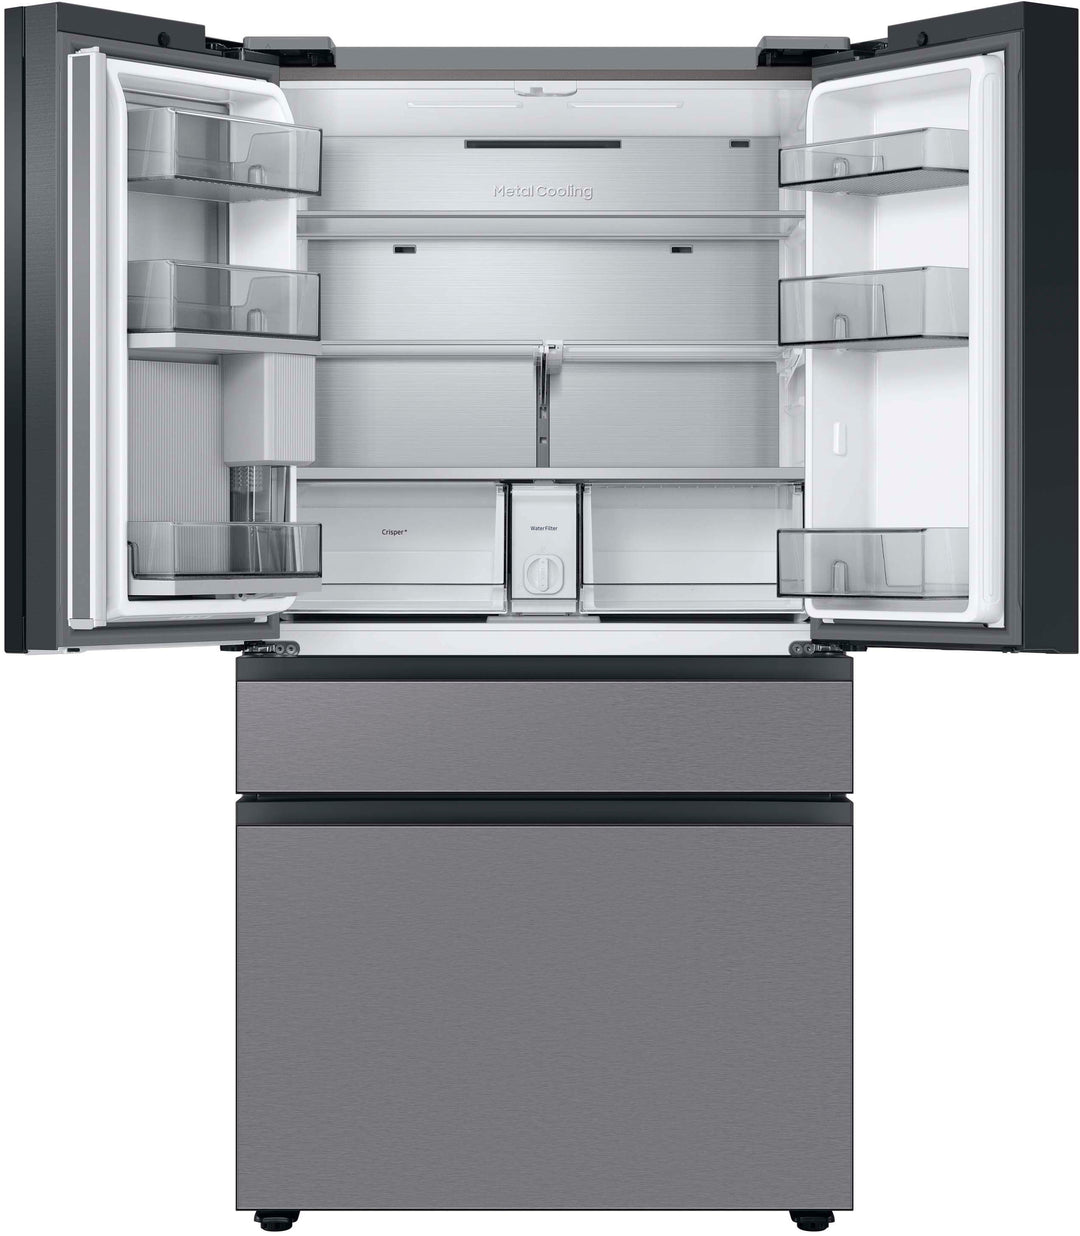 Samsung - Bespoke 23 cu. ft. Counter Depth 4-Door French Door Refrigerator with Beverage Center - Stainless steel_5